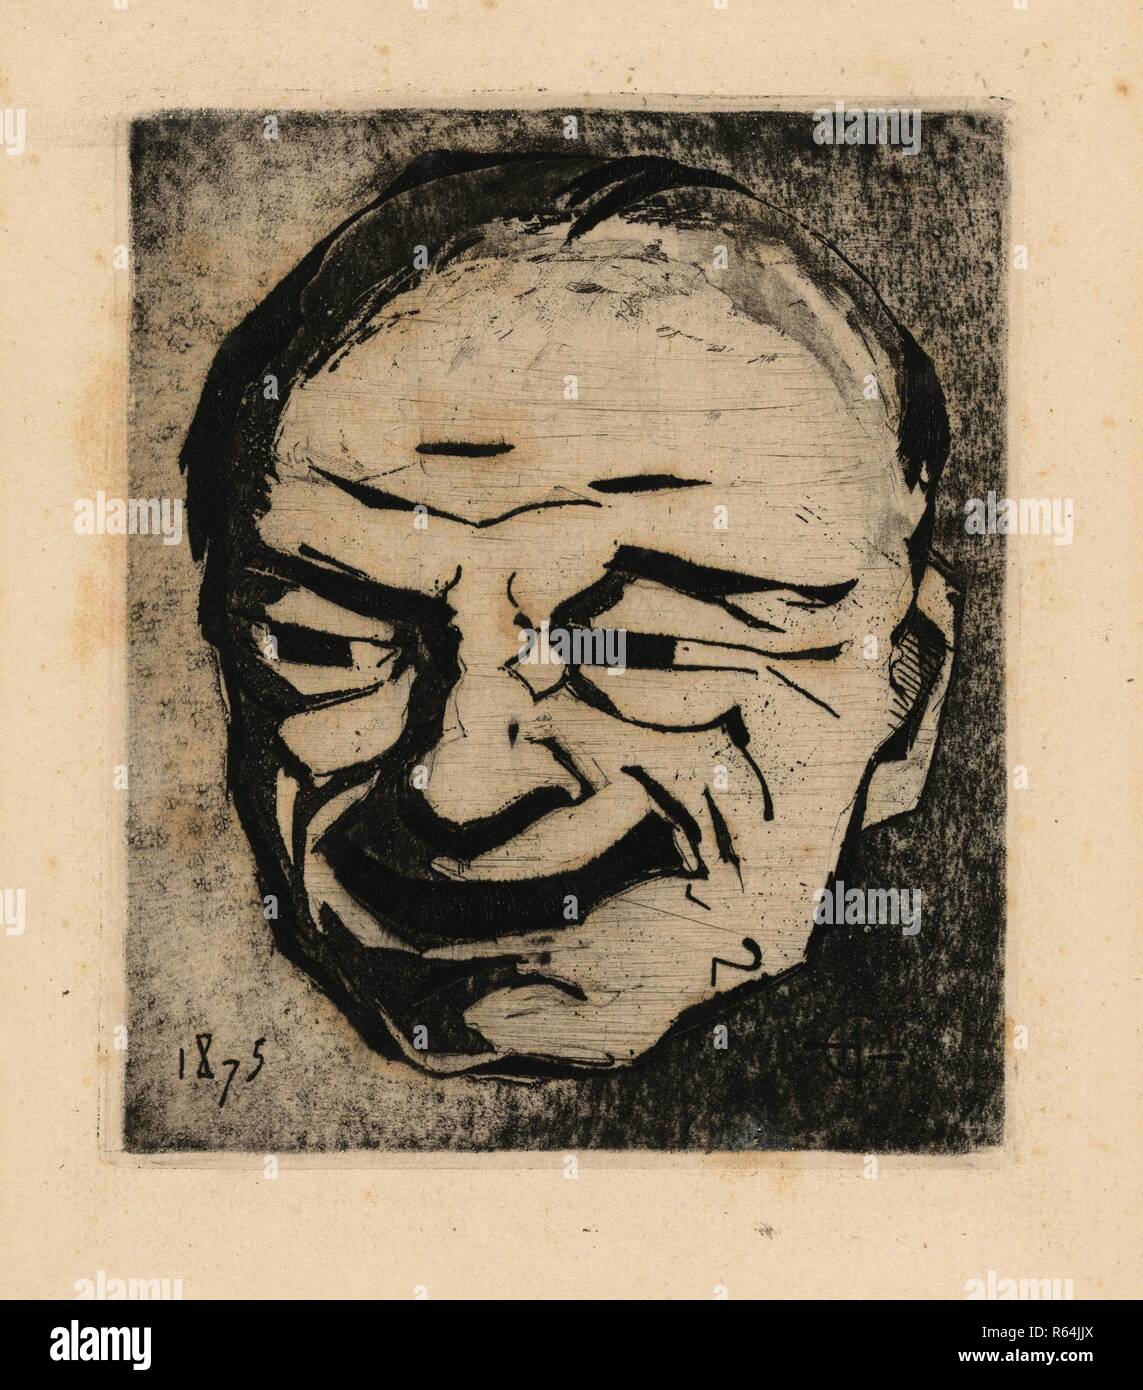 Japanese Mask, the Laugh (Masque japonais, le rire). Dimensions: 28.2 cm x 19.3 cm, 13.3 cm x 11.3 cm, 13 cm x 11 cm. Museum: Van Gogh Museum, Amsterdam. Author: Guérard, Henri Charles. Stock Photo